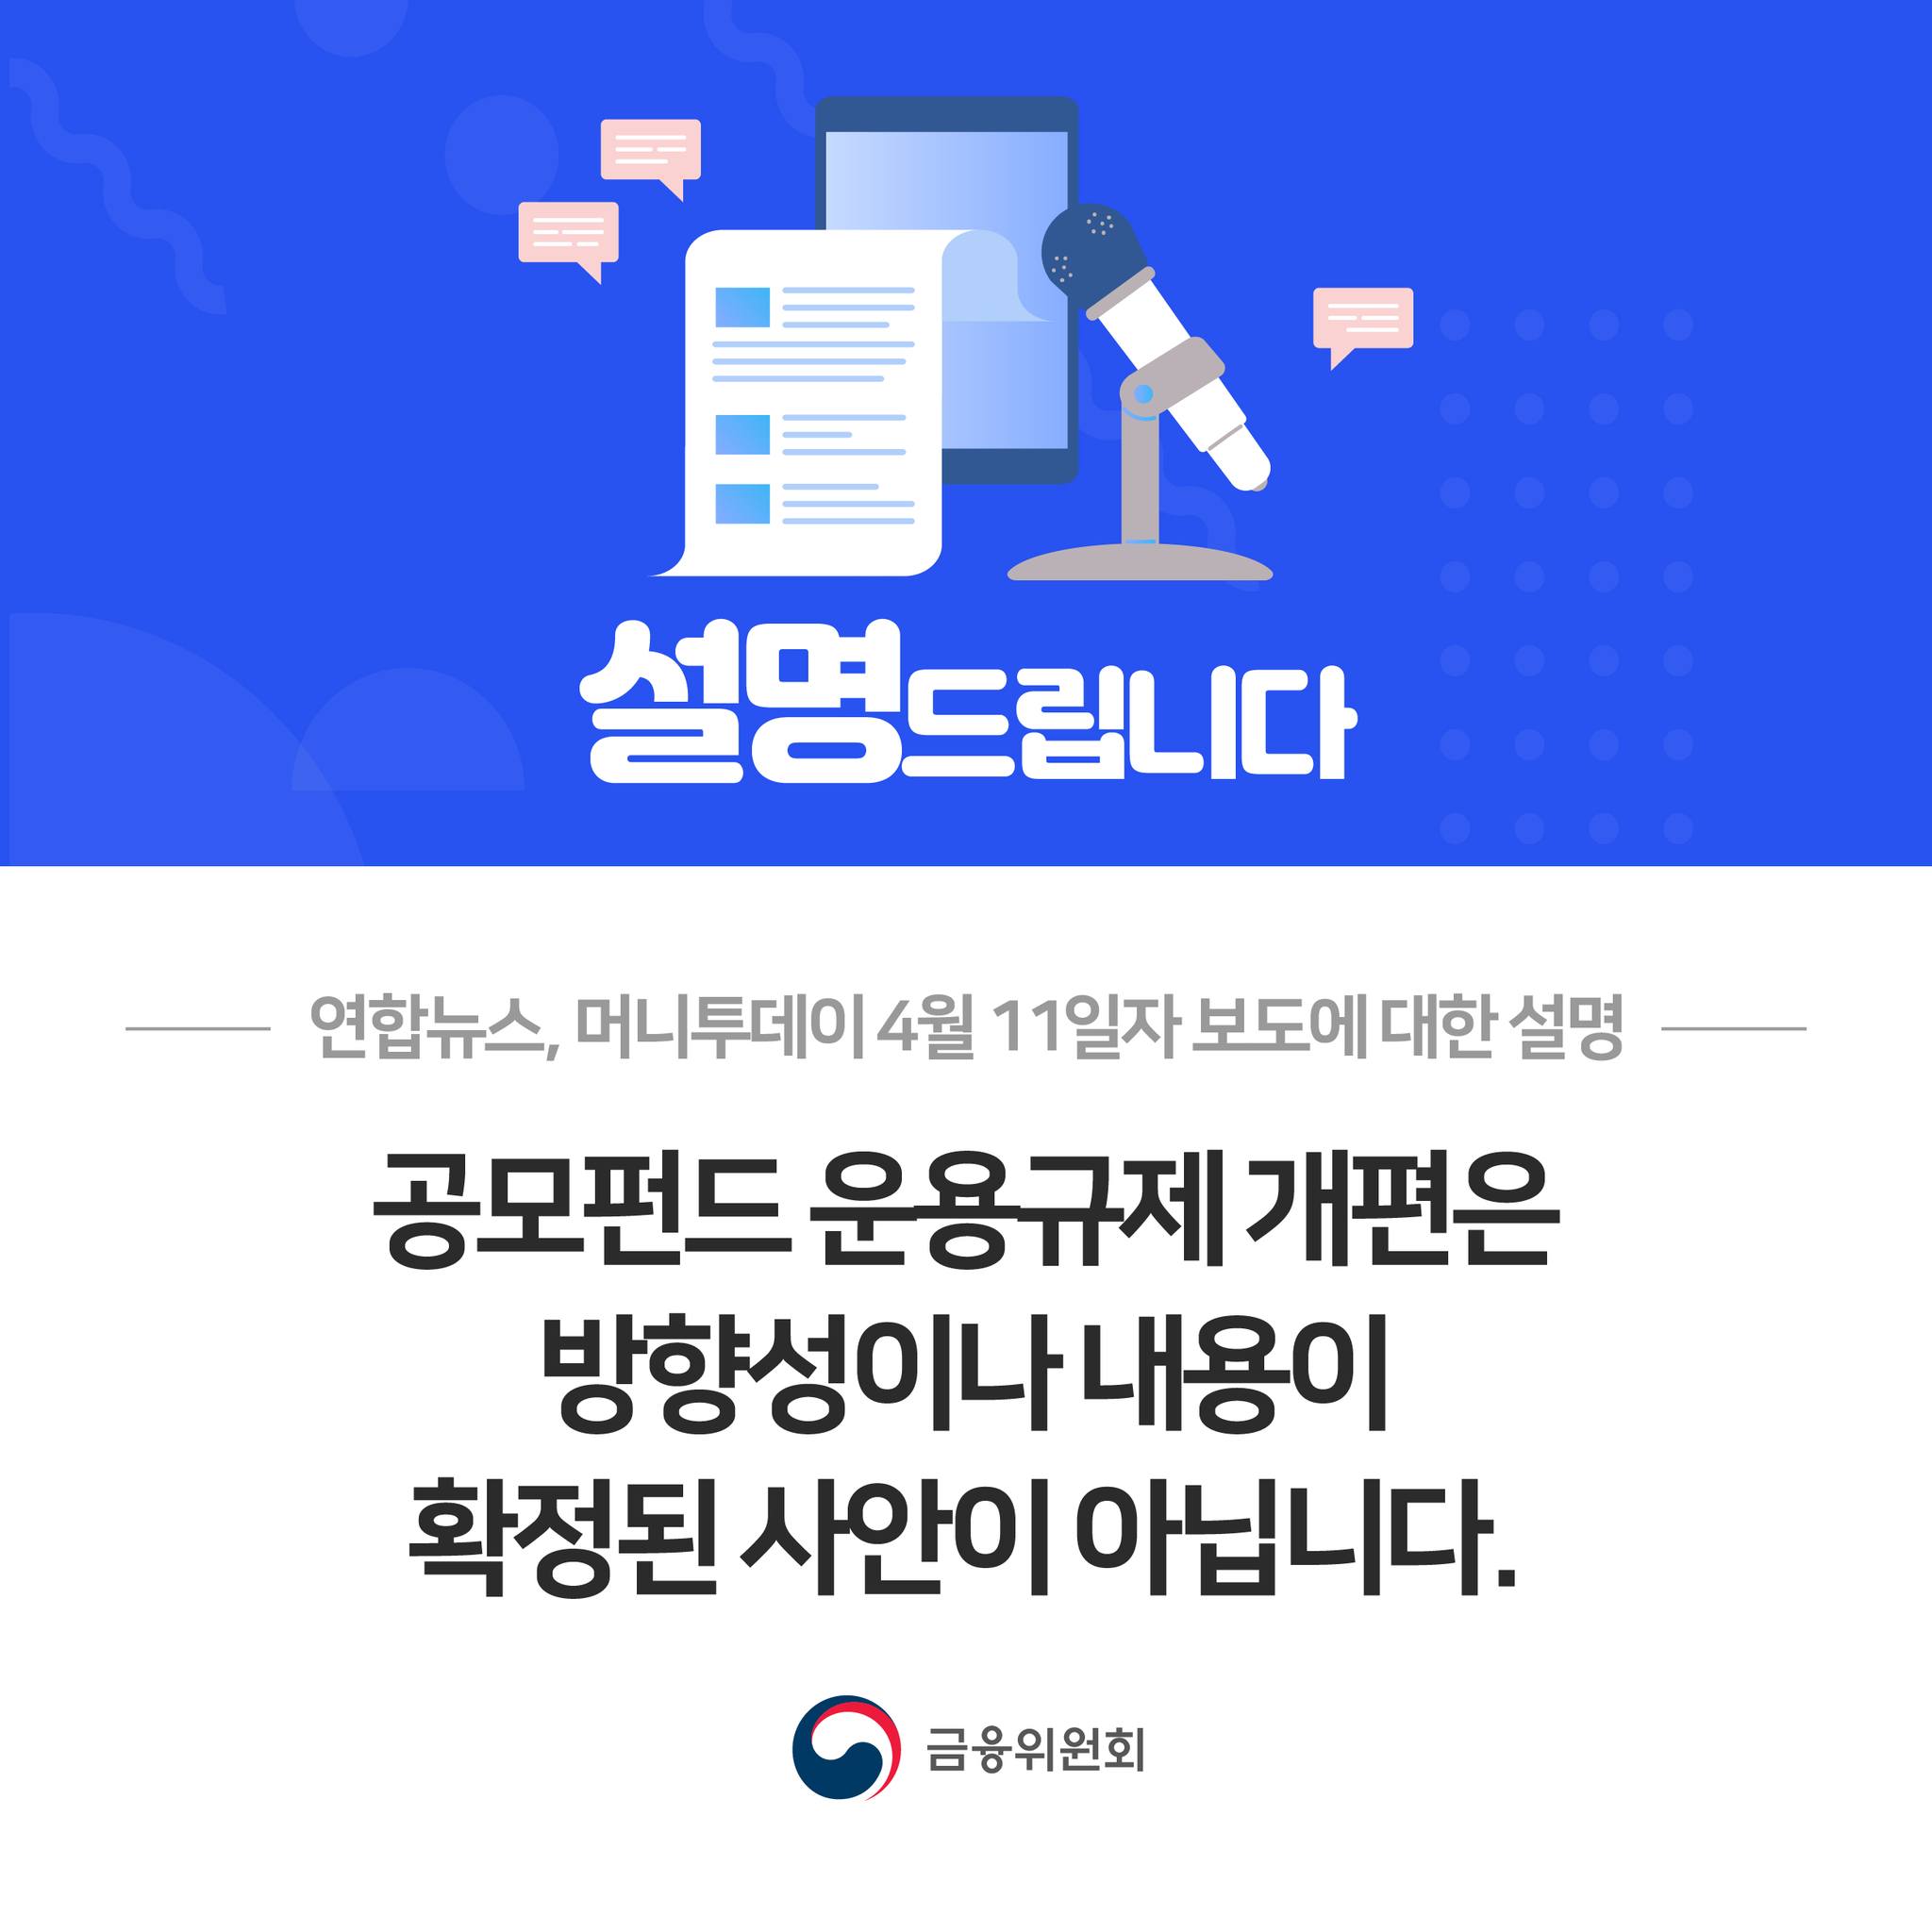 연합뉴스, 머니투데이 4월 11일자 보도에 대한 설명. 공모펀드 운용규제 개편은 방향성이나 내용이 확정된 사안이 아닙니다.